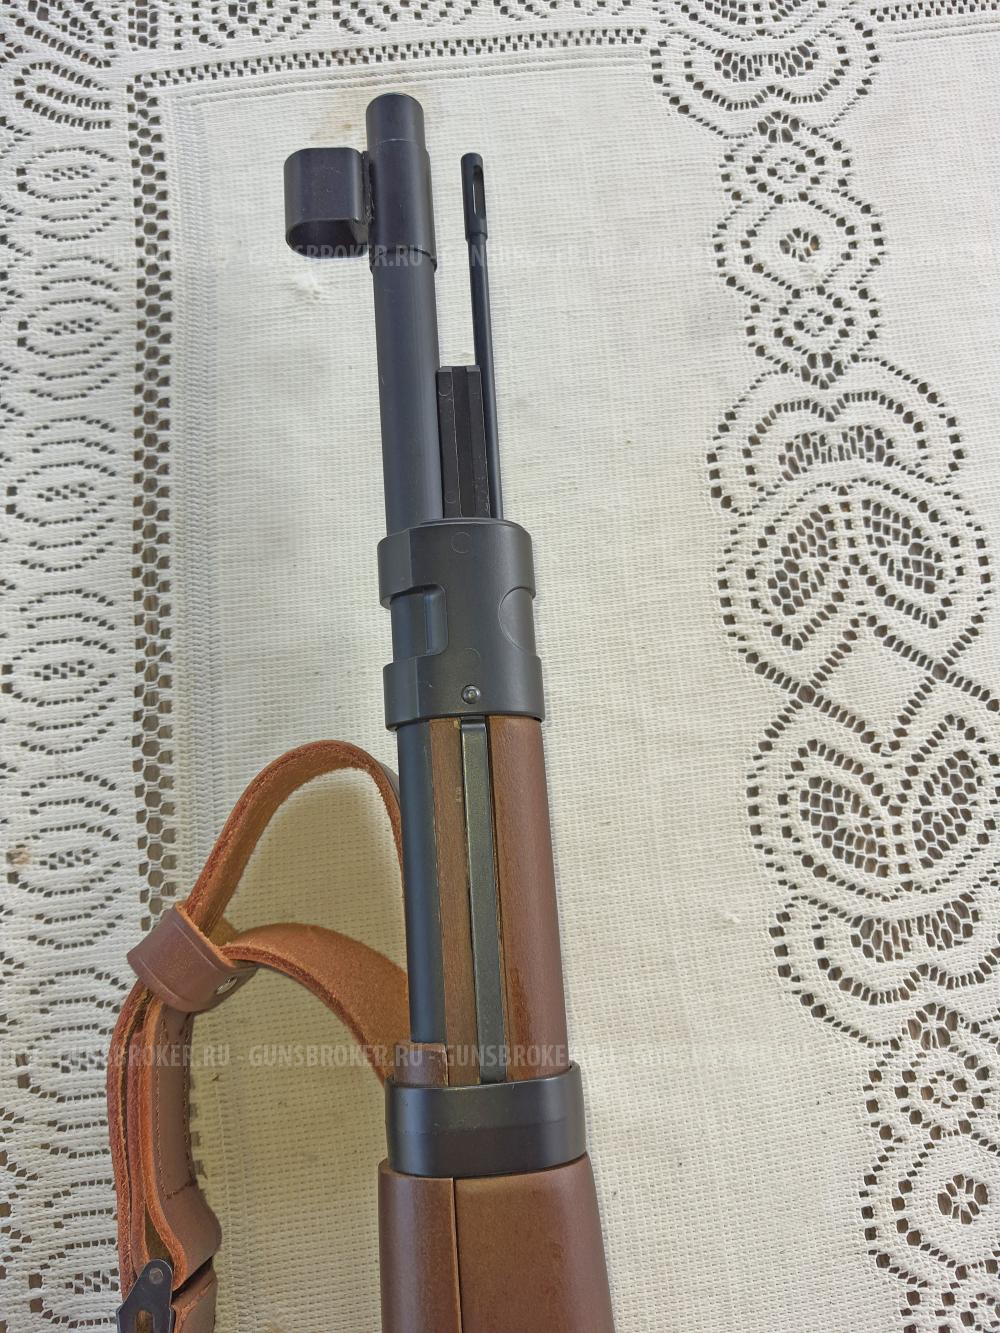 Страйкбольная винтовка G&G G980 Mauser Gewehr 98